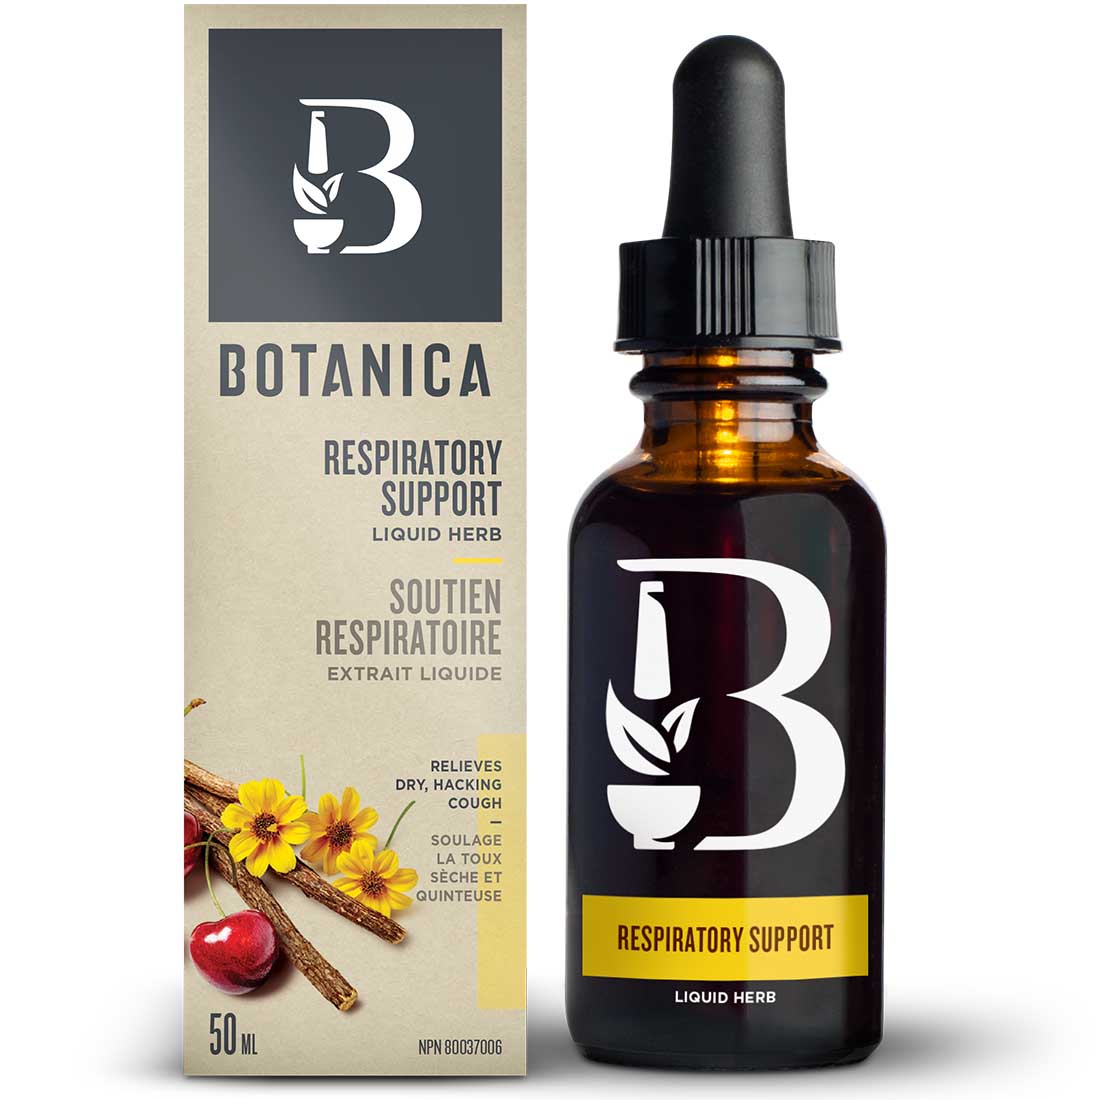 Botanica Respiratory Liquid Herb, 50ml